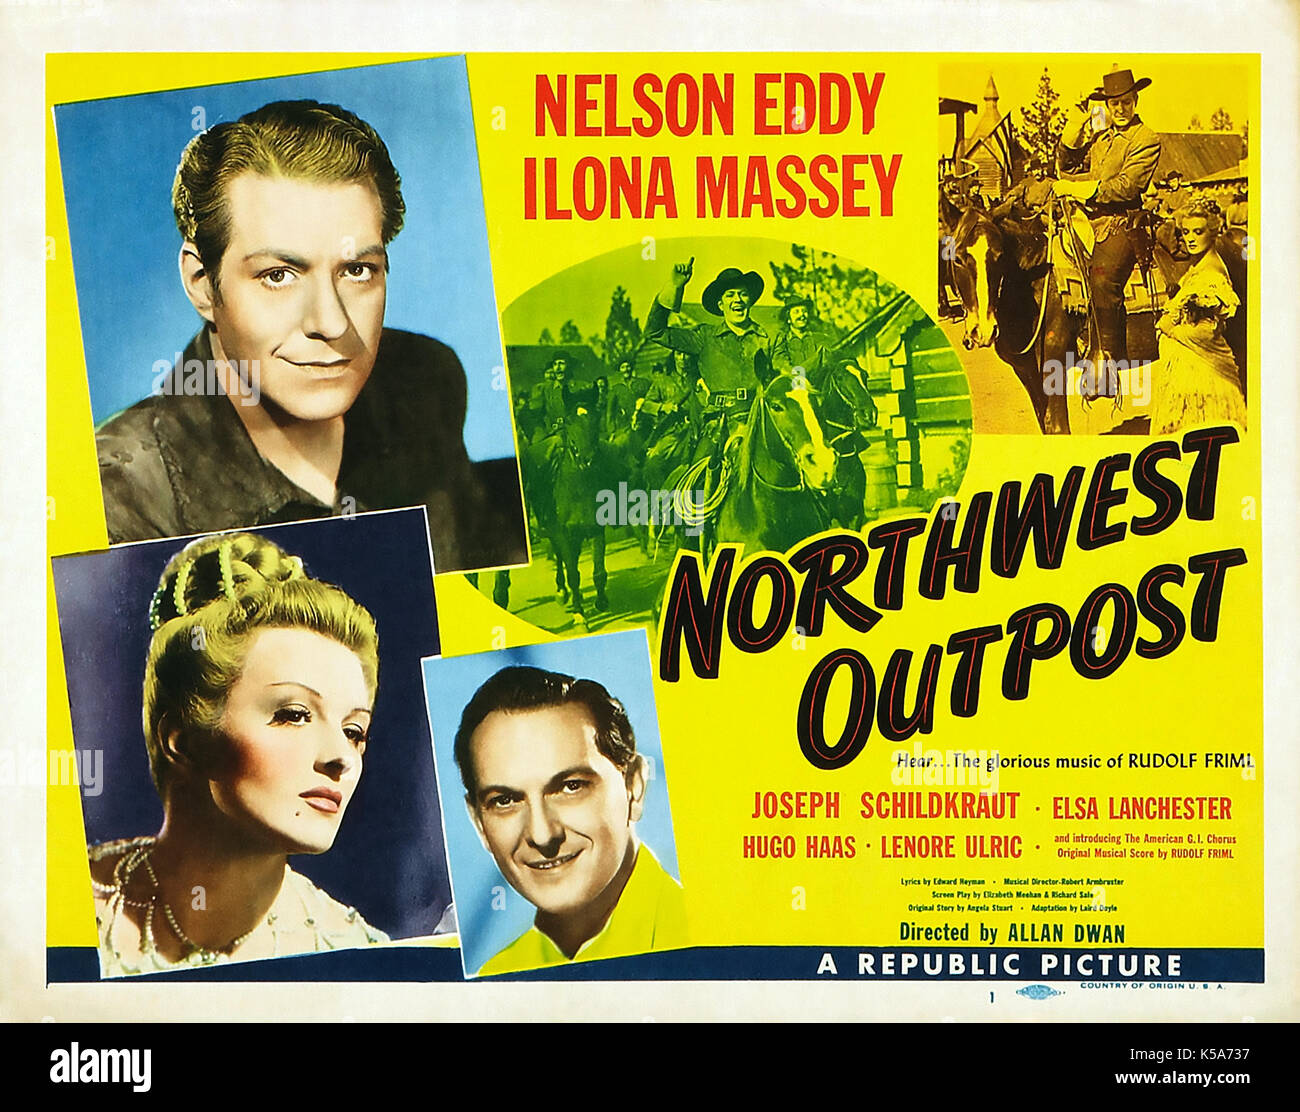 AVANT-POSTE du Nord-Ouest (alias fin de l'arc-en-ciel) 1947 Republic Pictures film avec Nelson Eddy et Ilona Massey Banque D'Images